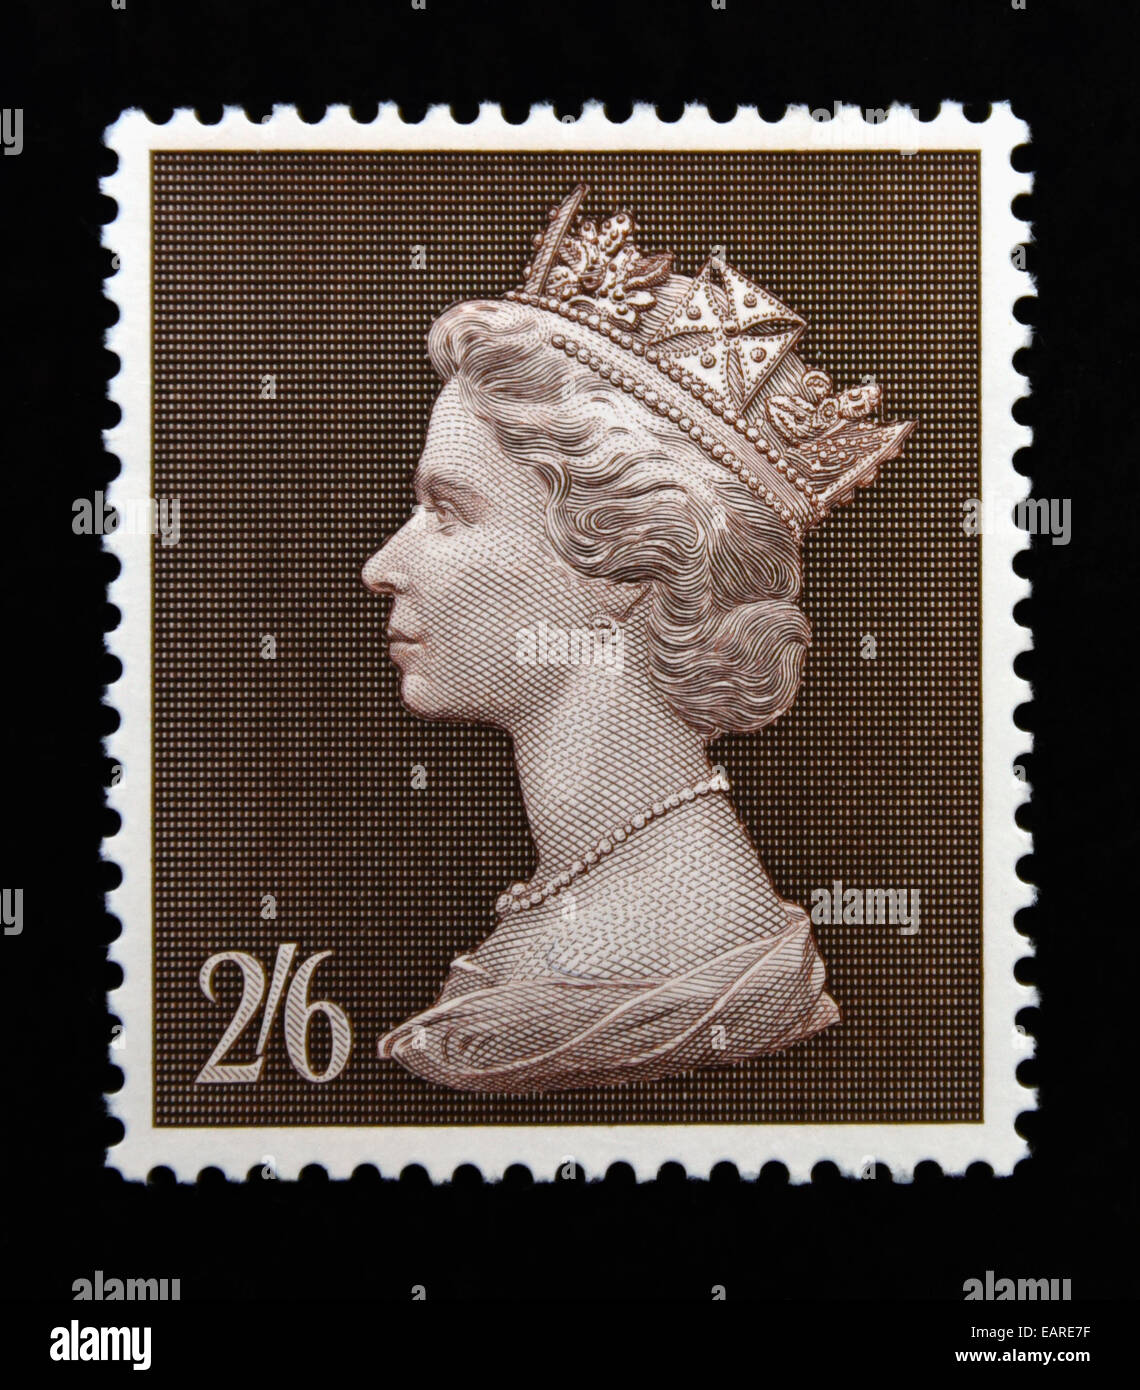 Postage stamp. Great Britain. Queen Elizabeth II. High value definitive. 1969. Arnold Machin. Bradbury, Wilkinson. 2/6. Stock Photo